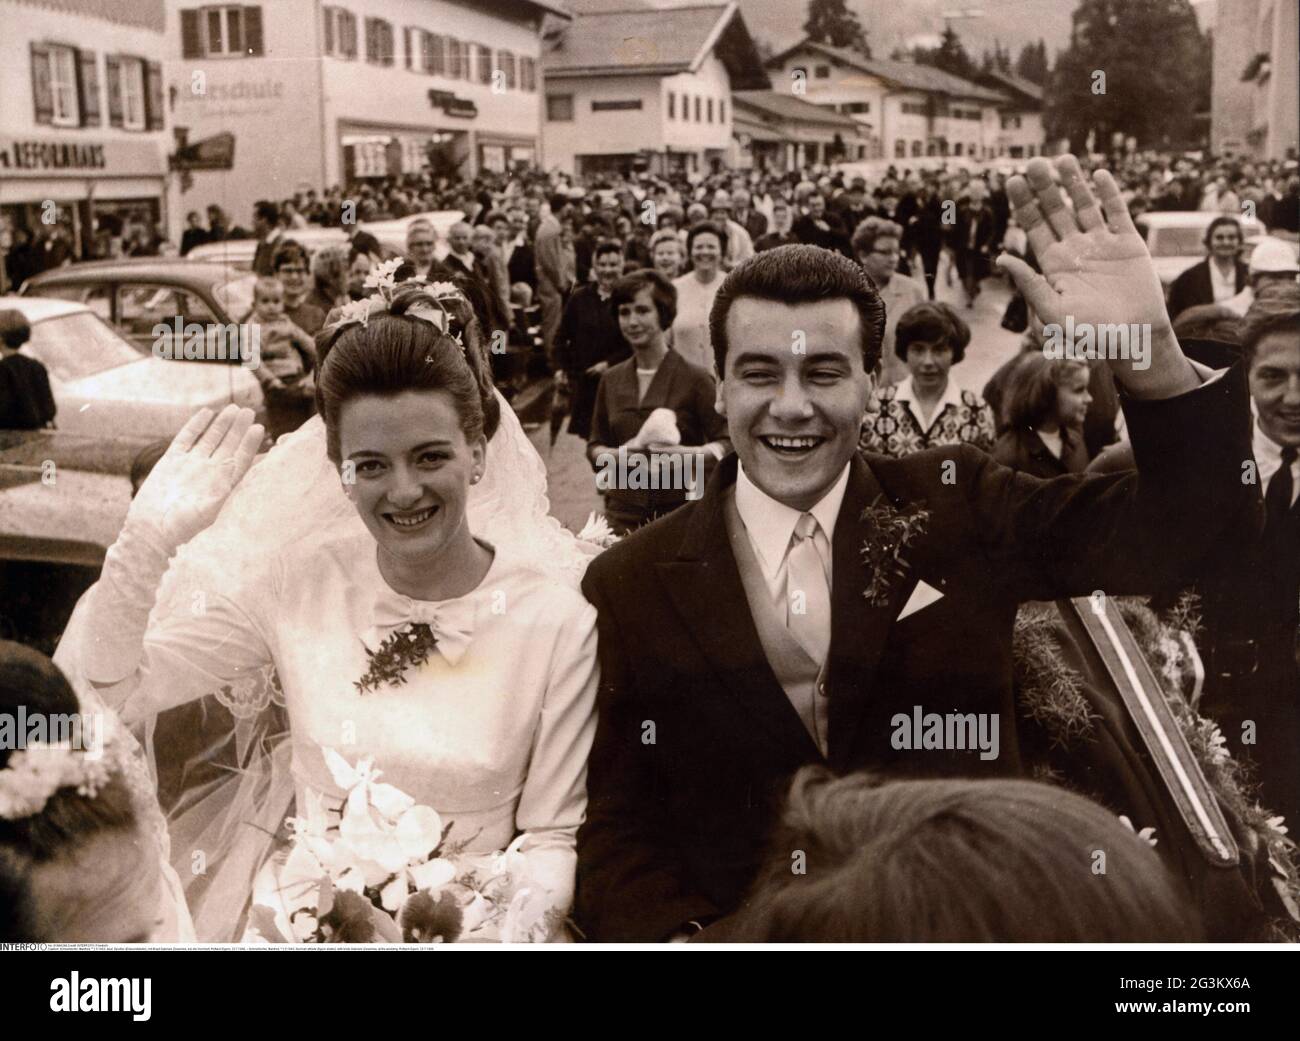 Schnelldorfer, Manfred, * 2.5.1943, atleta tedesco (pattinatore), con sposa Gabriele Zieseniss, DIRITTI-AGGIUNTIVI-AUTORIZZAZIONE-INFORMAZIONI-NON-DISPONIBILI Foto Stock